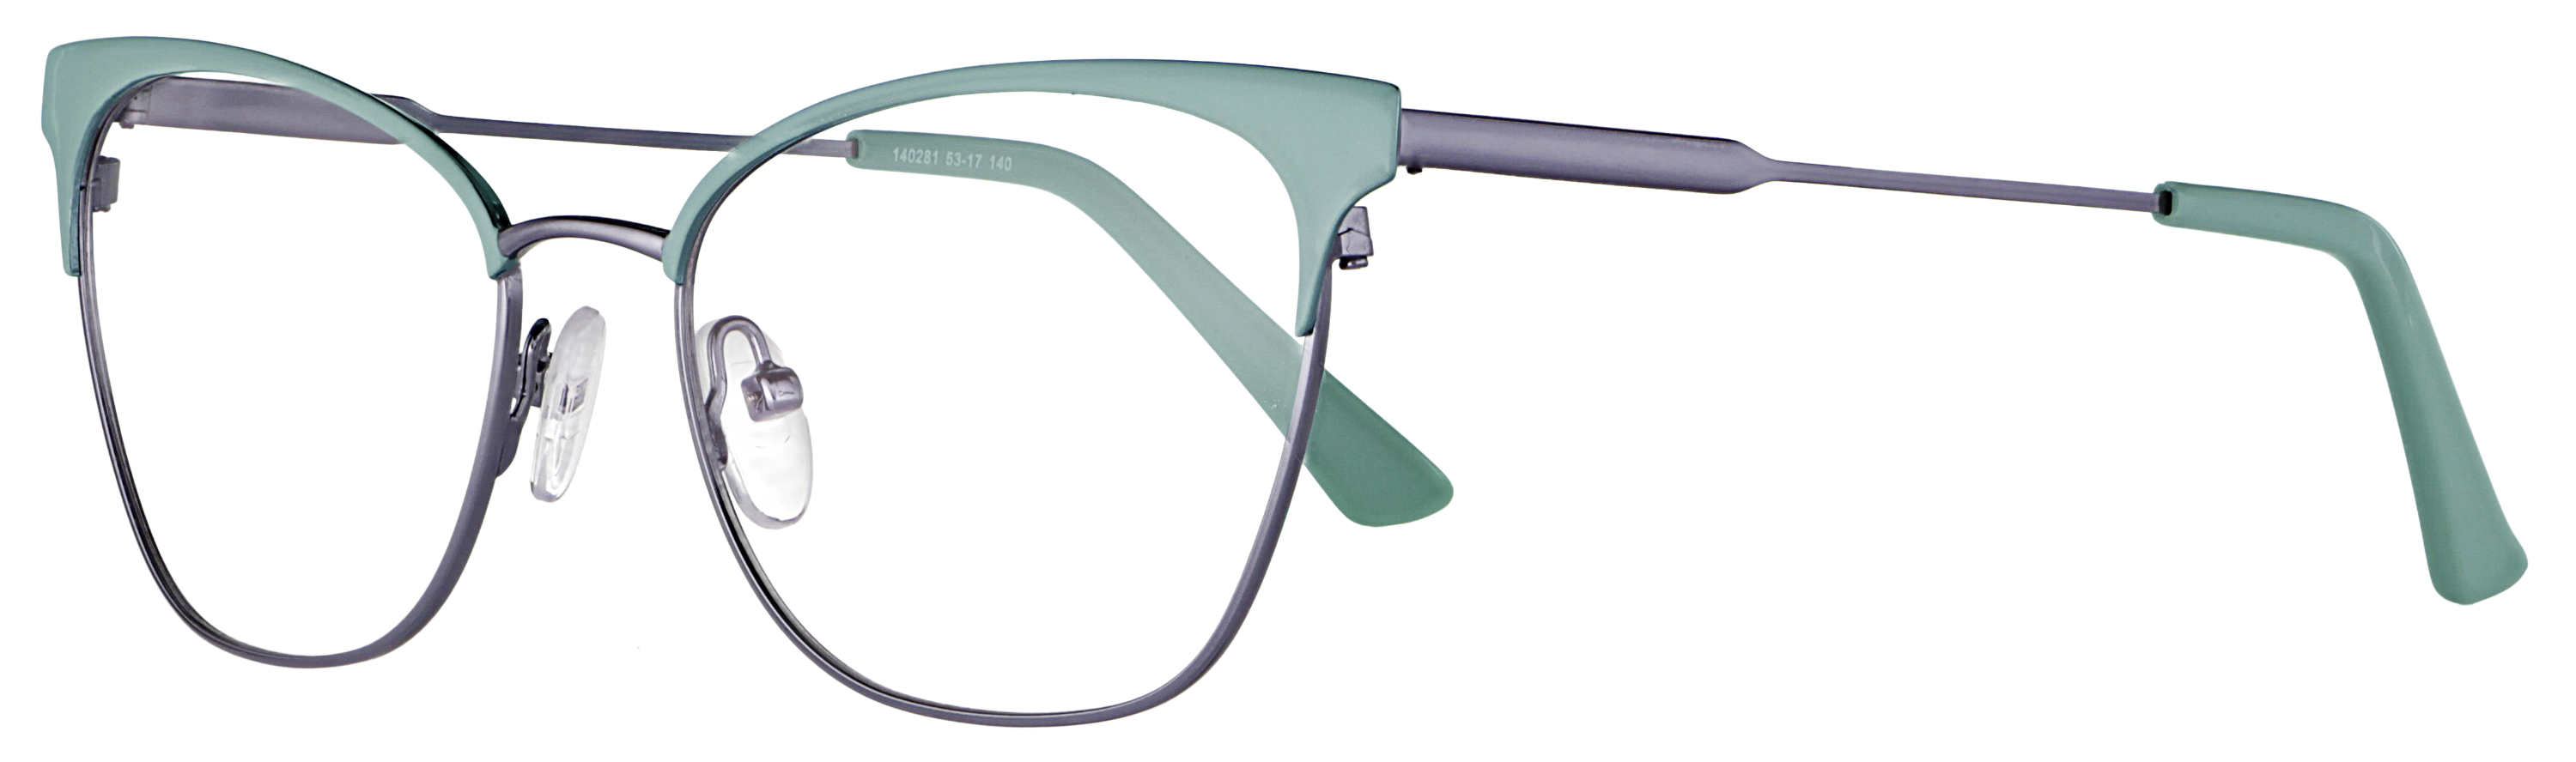 Das Bild zeigt die Korrektionsbrille 140281 von der Marke Abele Optik in türkis.